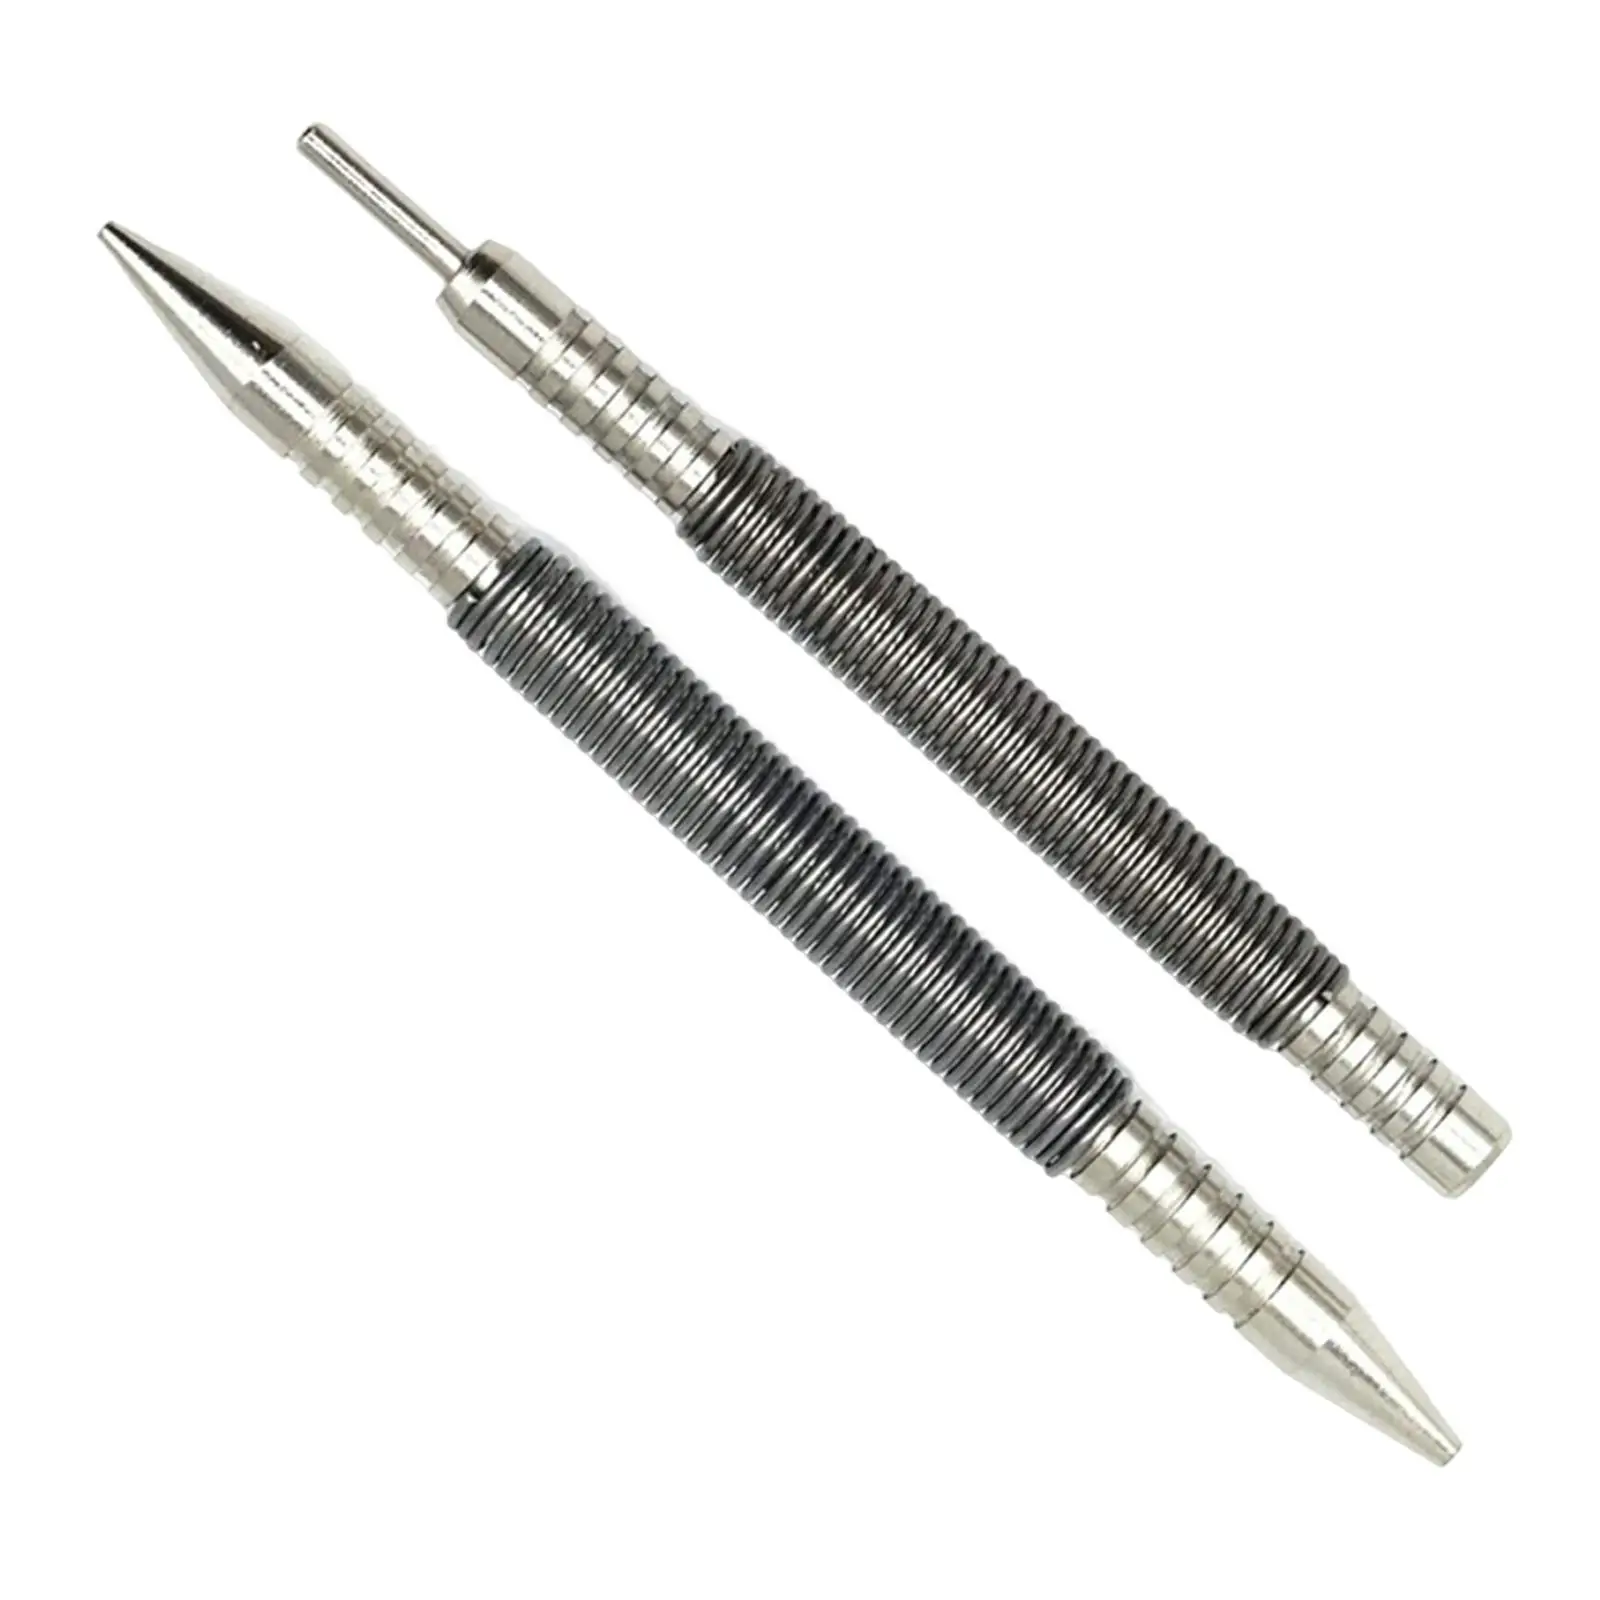 2Pcs Nail Set and Hinge Pin Tool Carbon Steel Spring Pin Punch